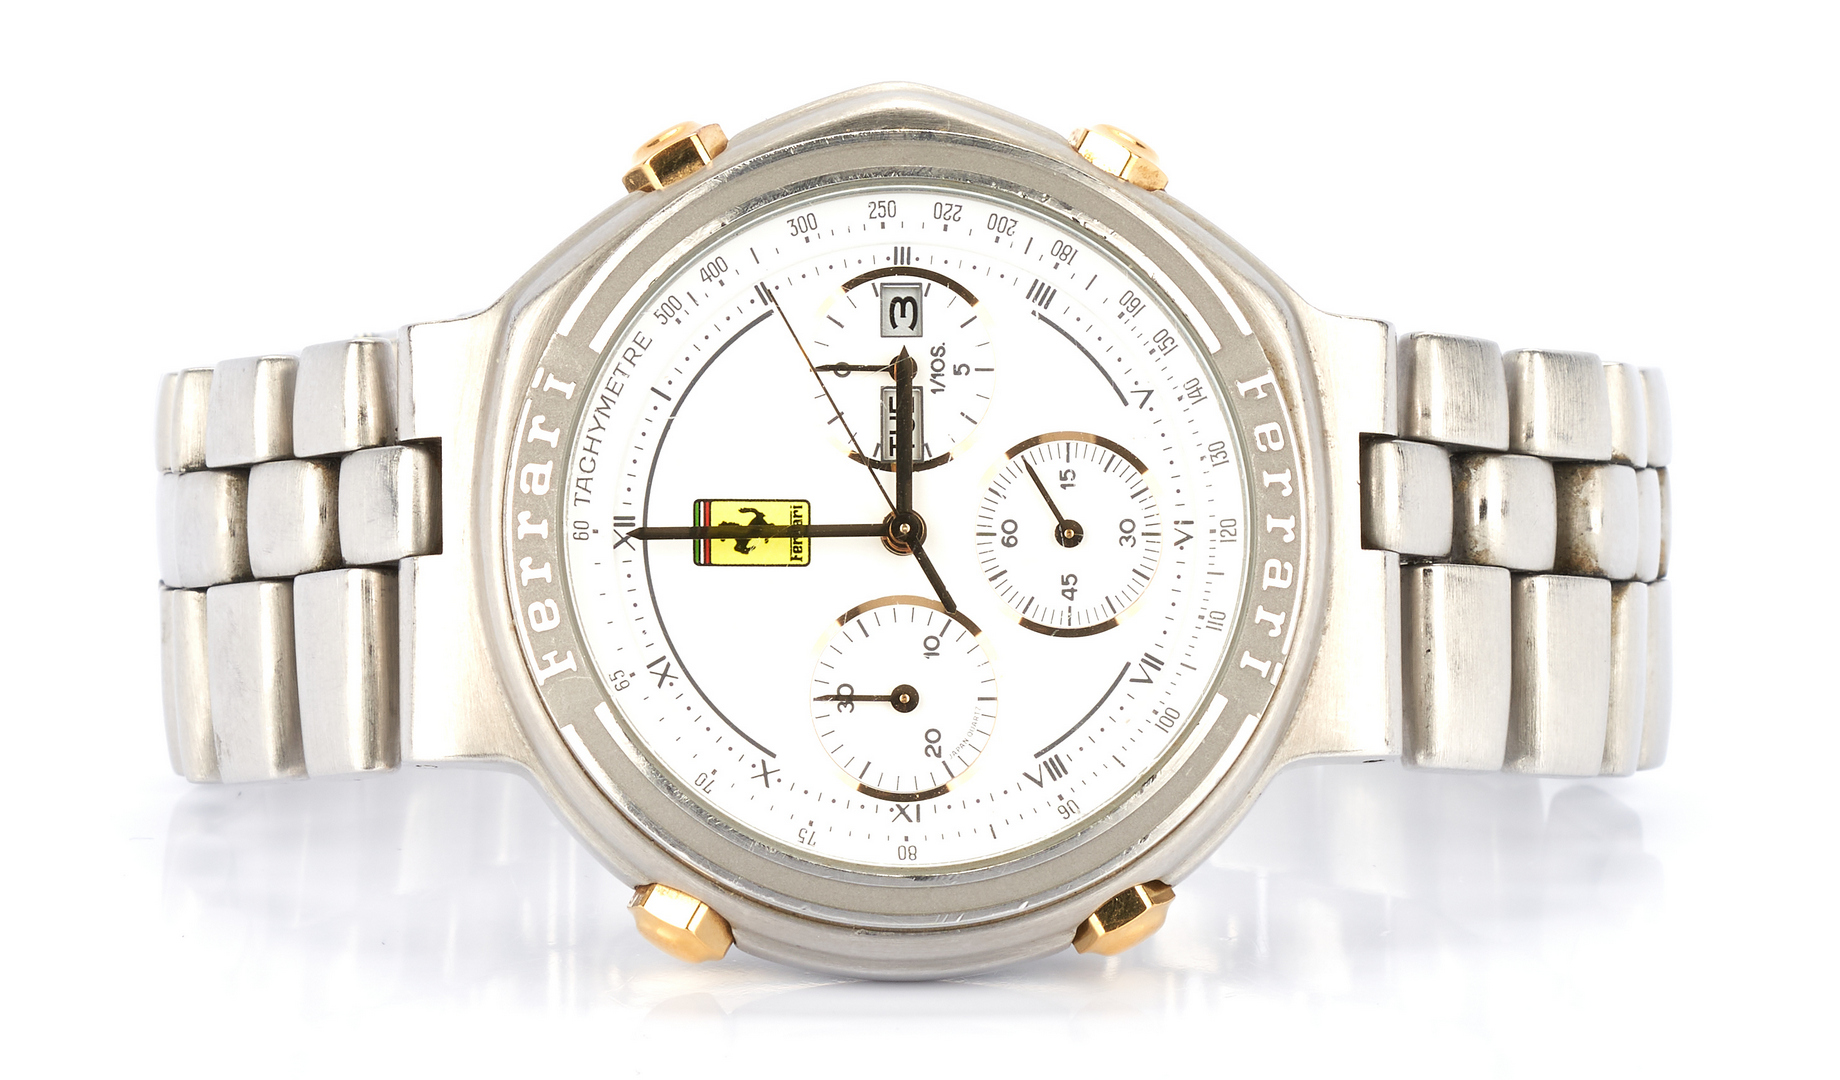 Lot 796: Cartier Ferrari Formula Chronograph Watch